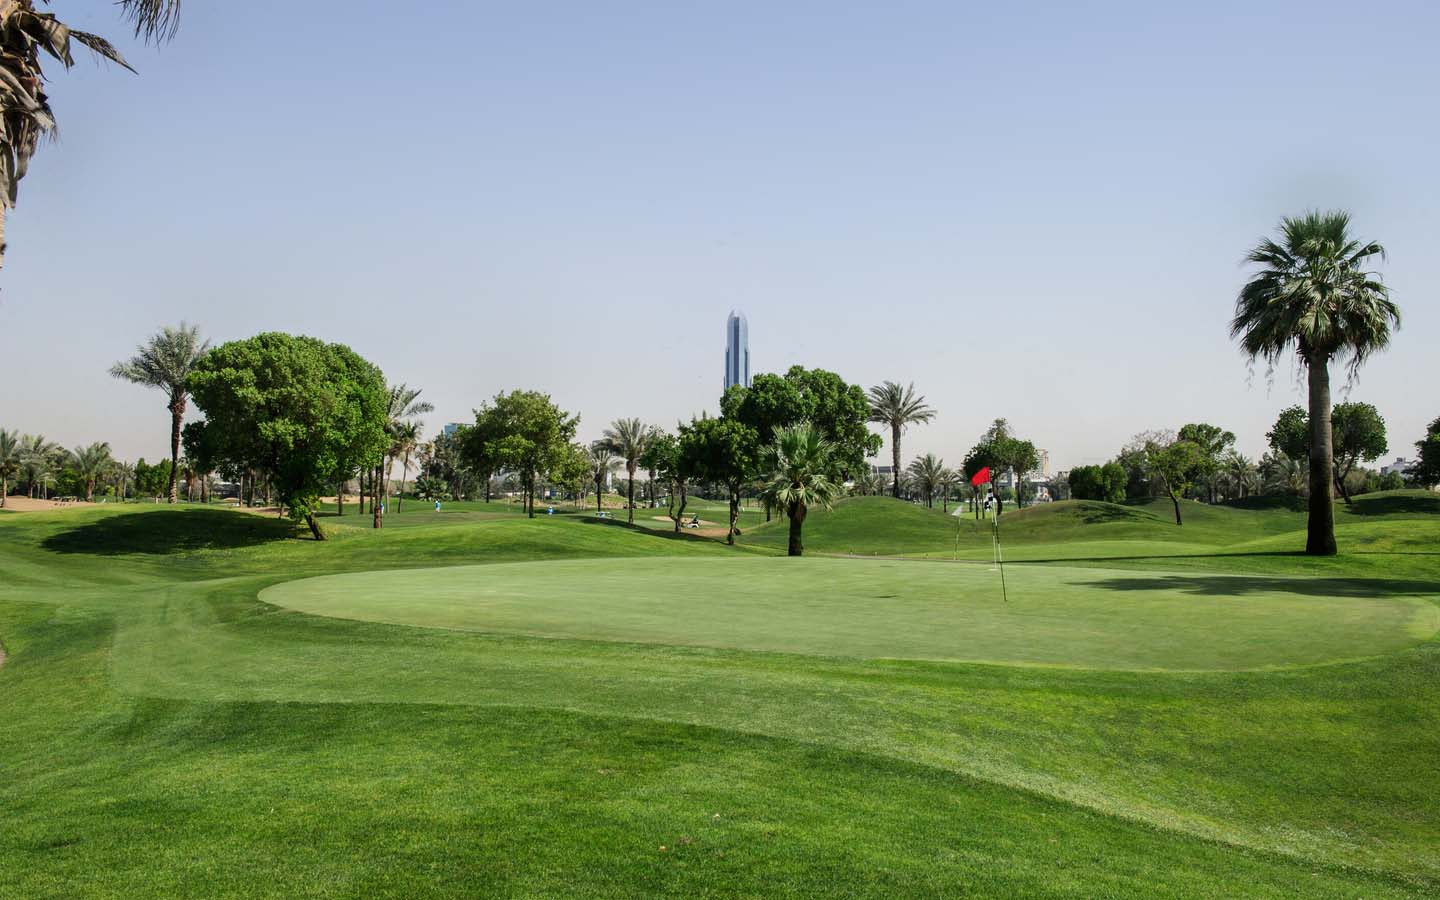 أفضل الأماكن للخروج في قطر